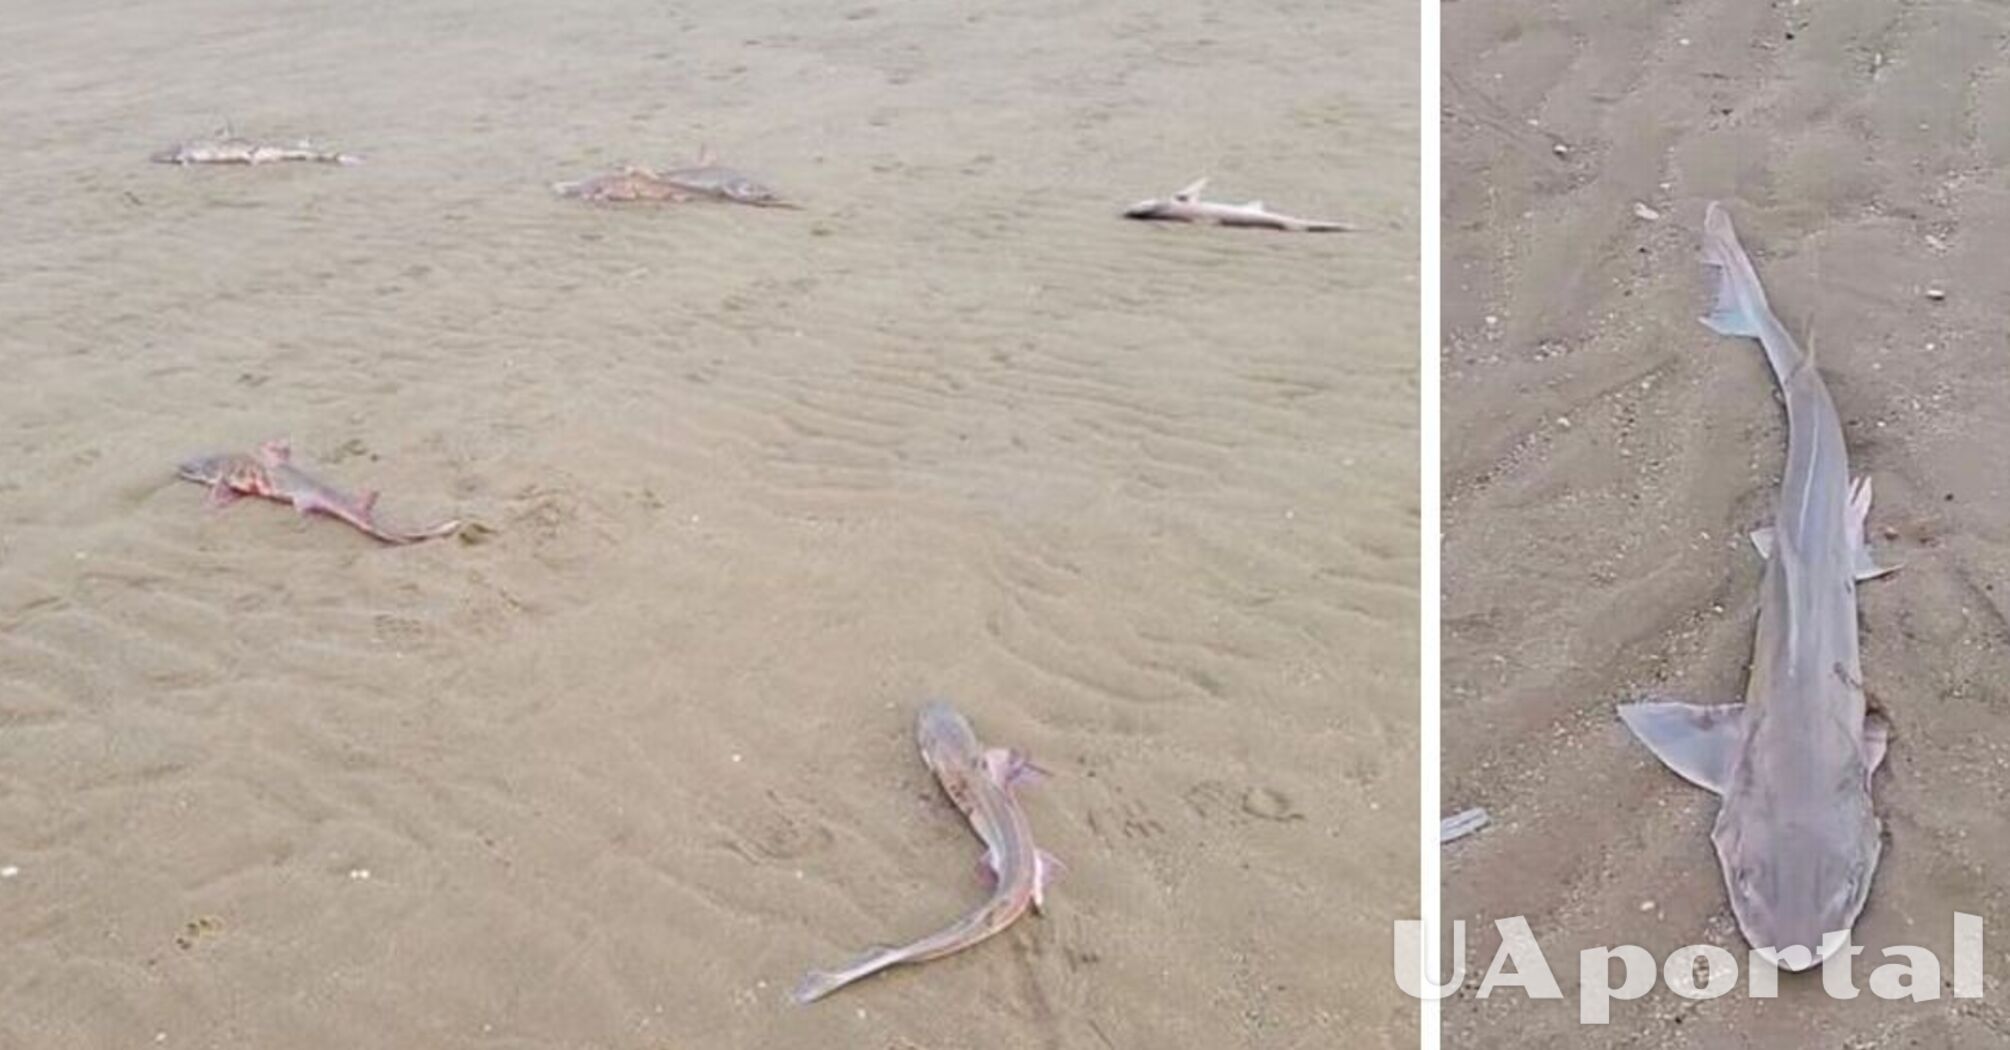 Десятки мертвых акул выбросило на британский пляж (фото)